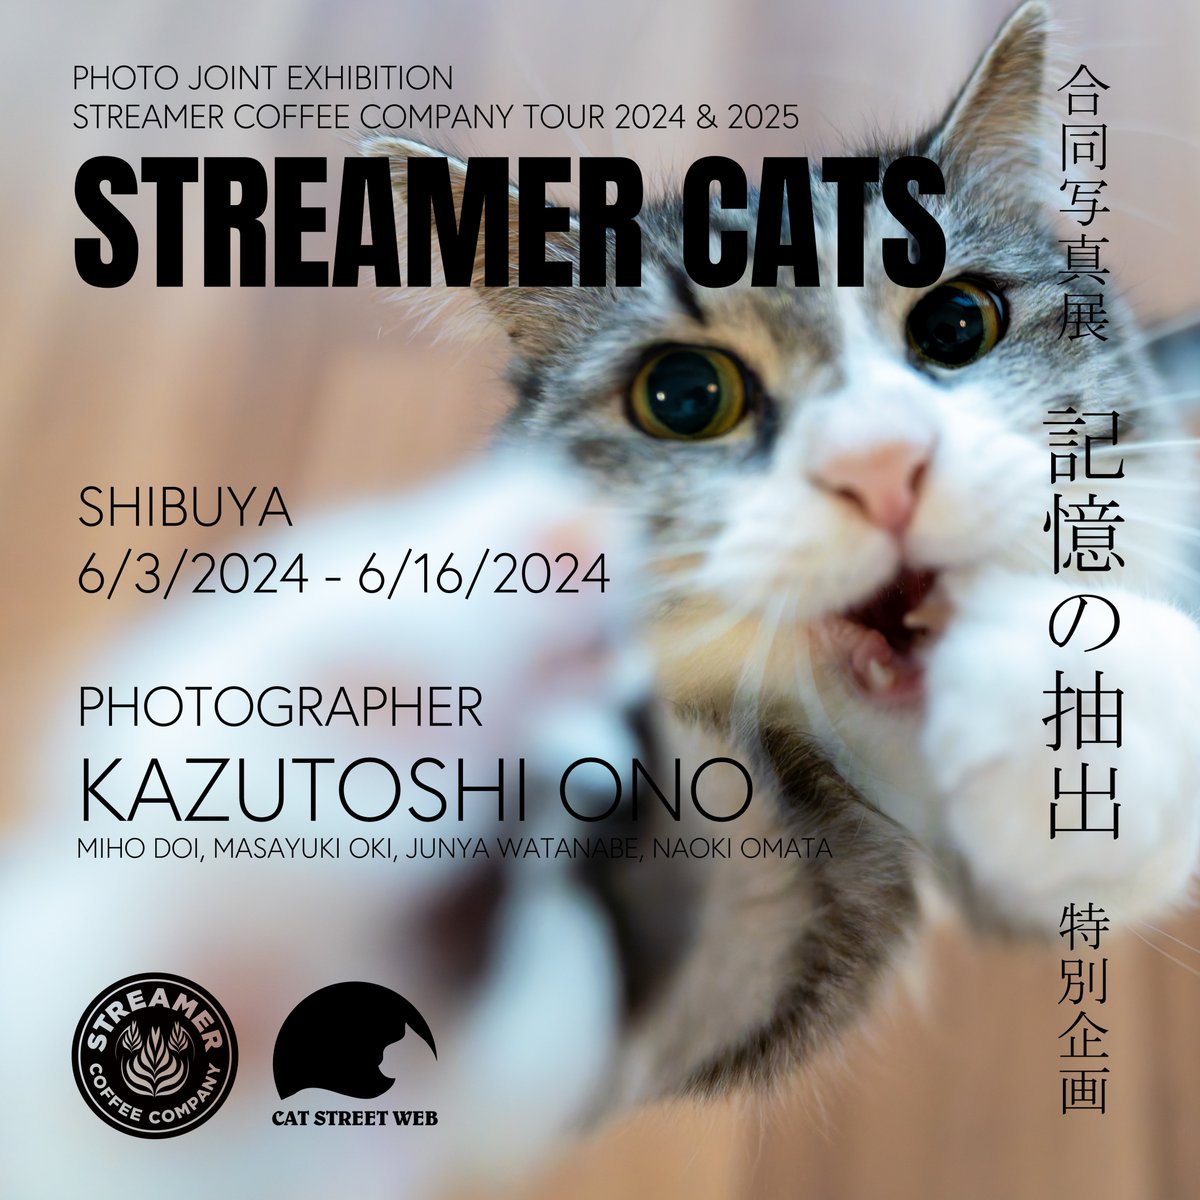 【６月の渋谷での展示のお知らせ】
CAT STREET WEBが主催する合同猫写真展 “STREAMER CATS” に、写真集『みんなケンジを好きになる』の土肥 美帆さん、写真集『必死すぎるネコ』シリーズの沖 昌之さん、愛猫家でもある主催のNaoki Omataさん、BMレギュラーのJunya Watanabeさんとともに参加します。